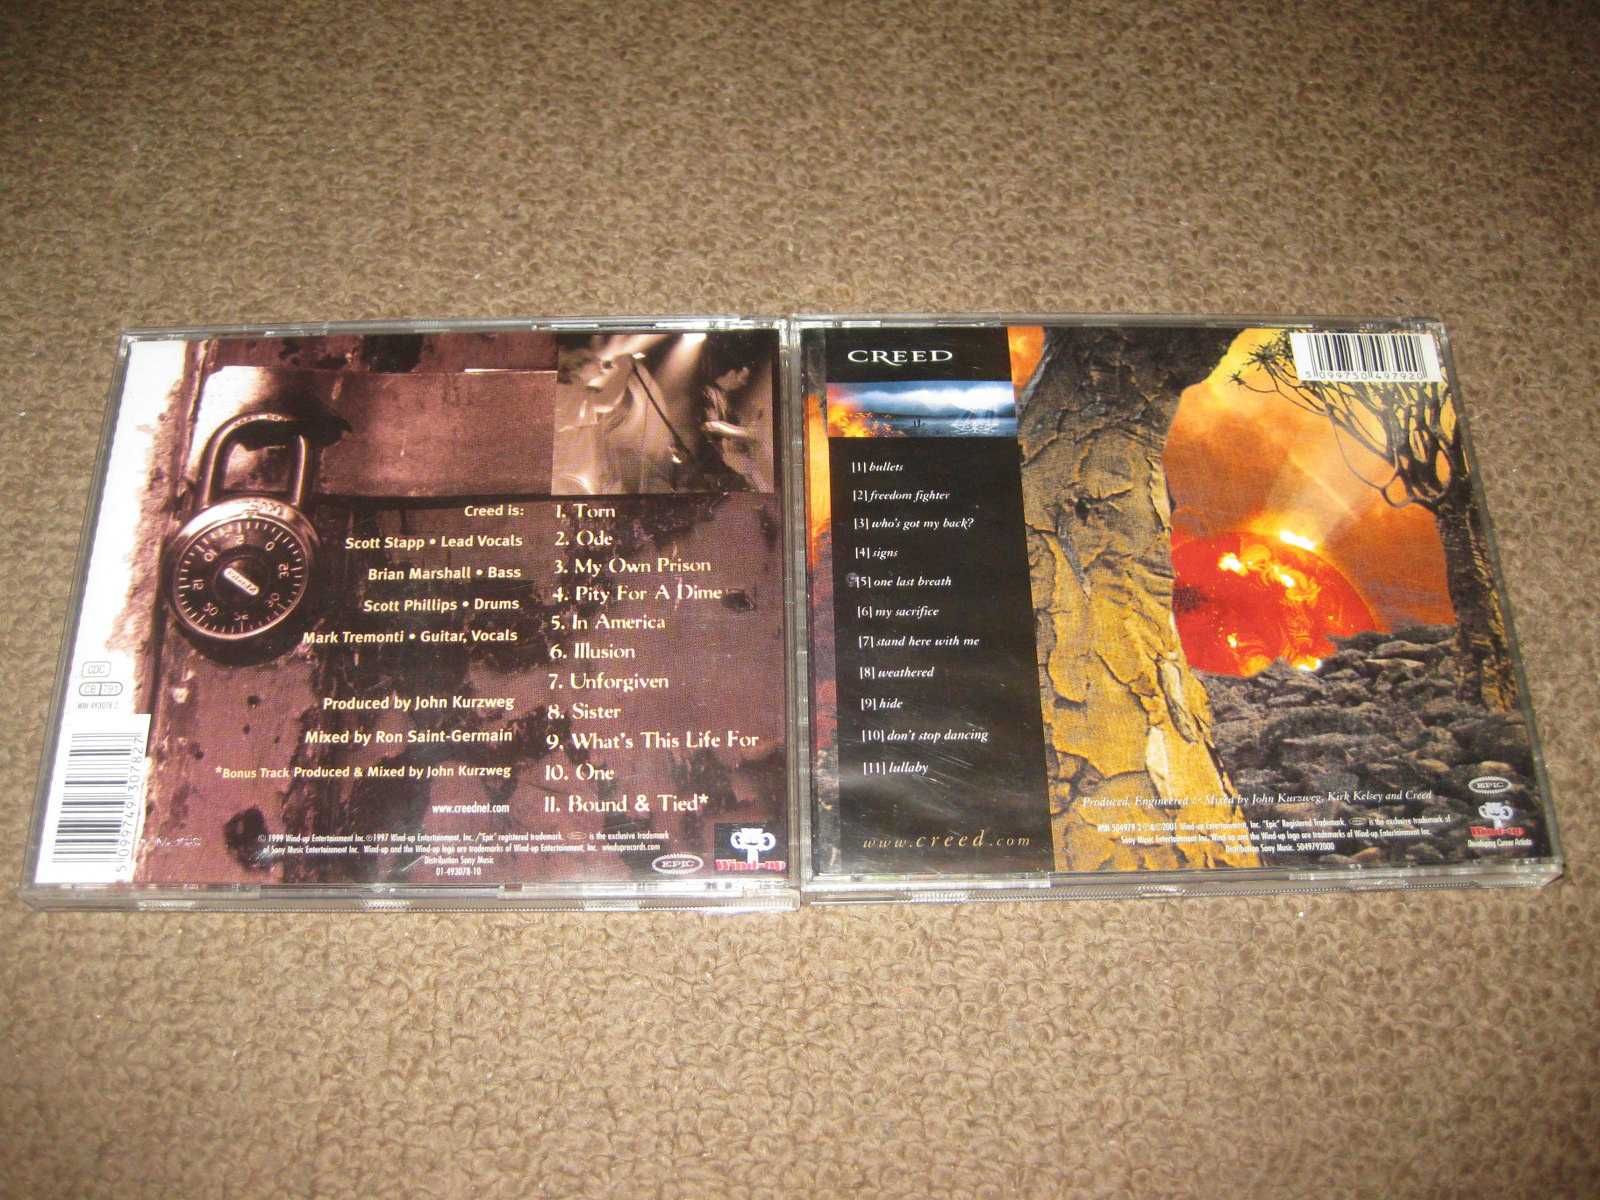 2 CDs dos "Creed" Portes Grátis!